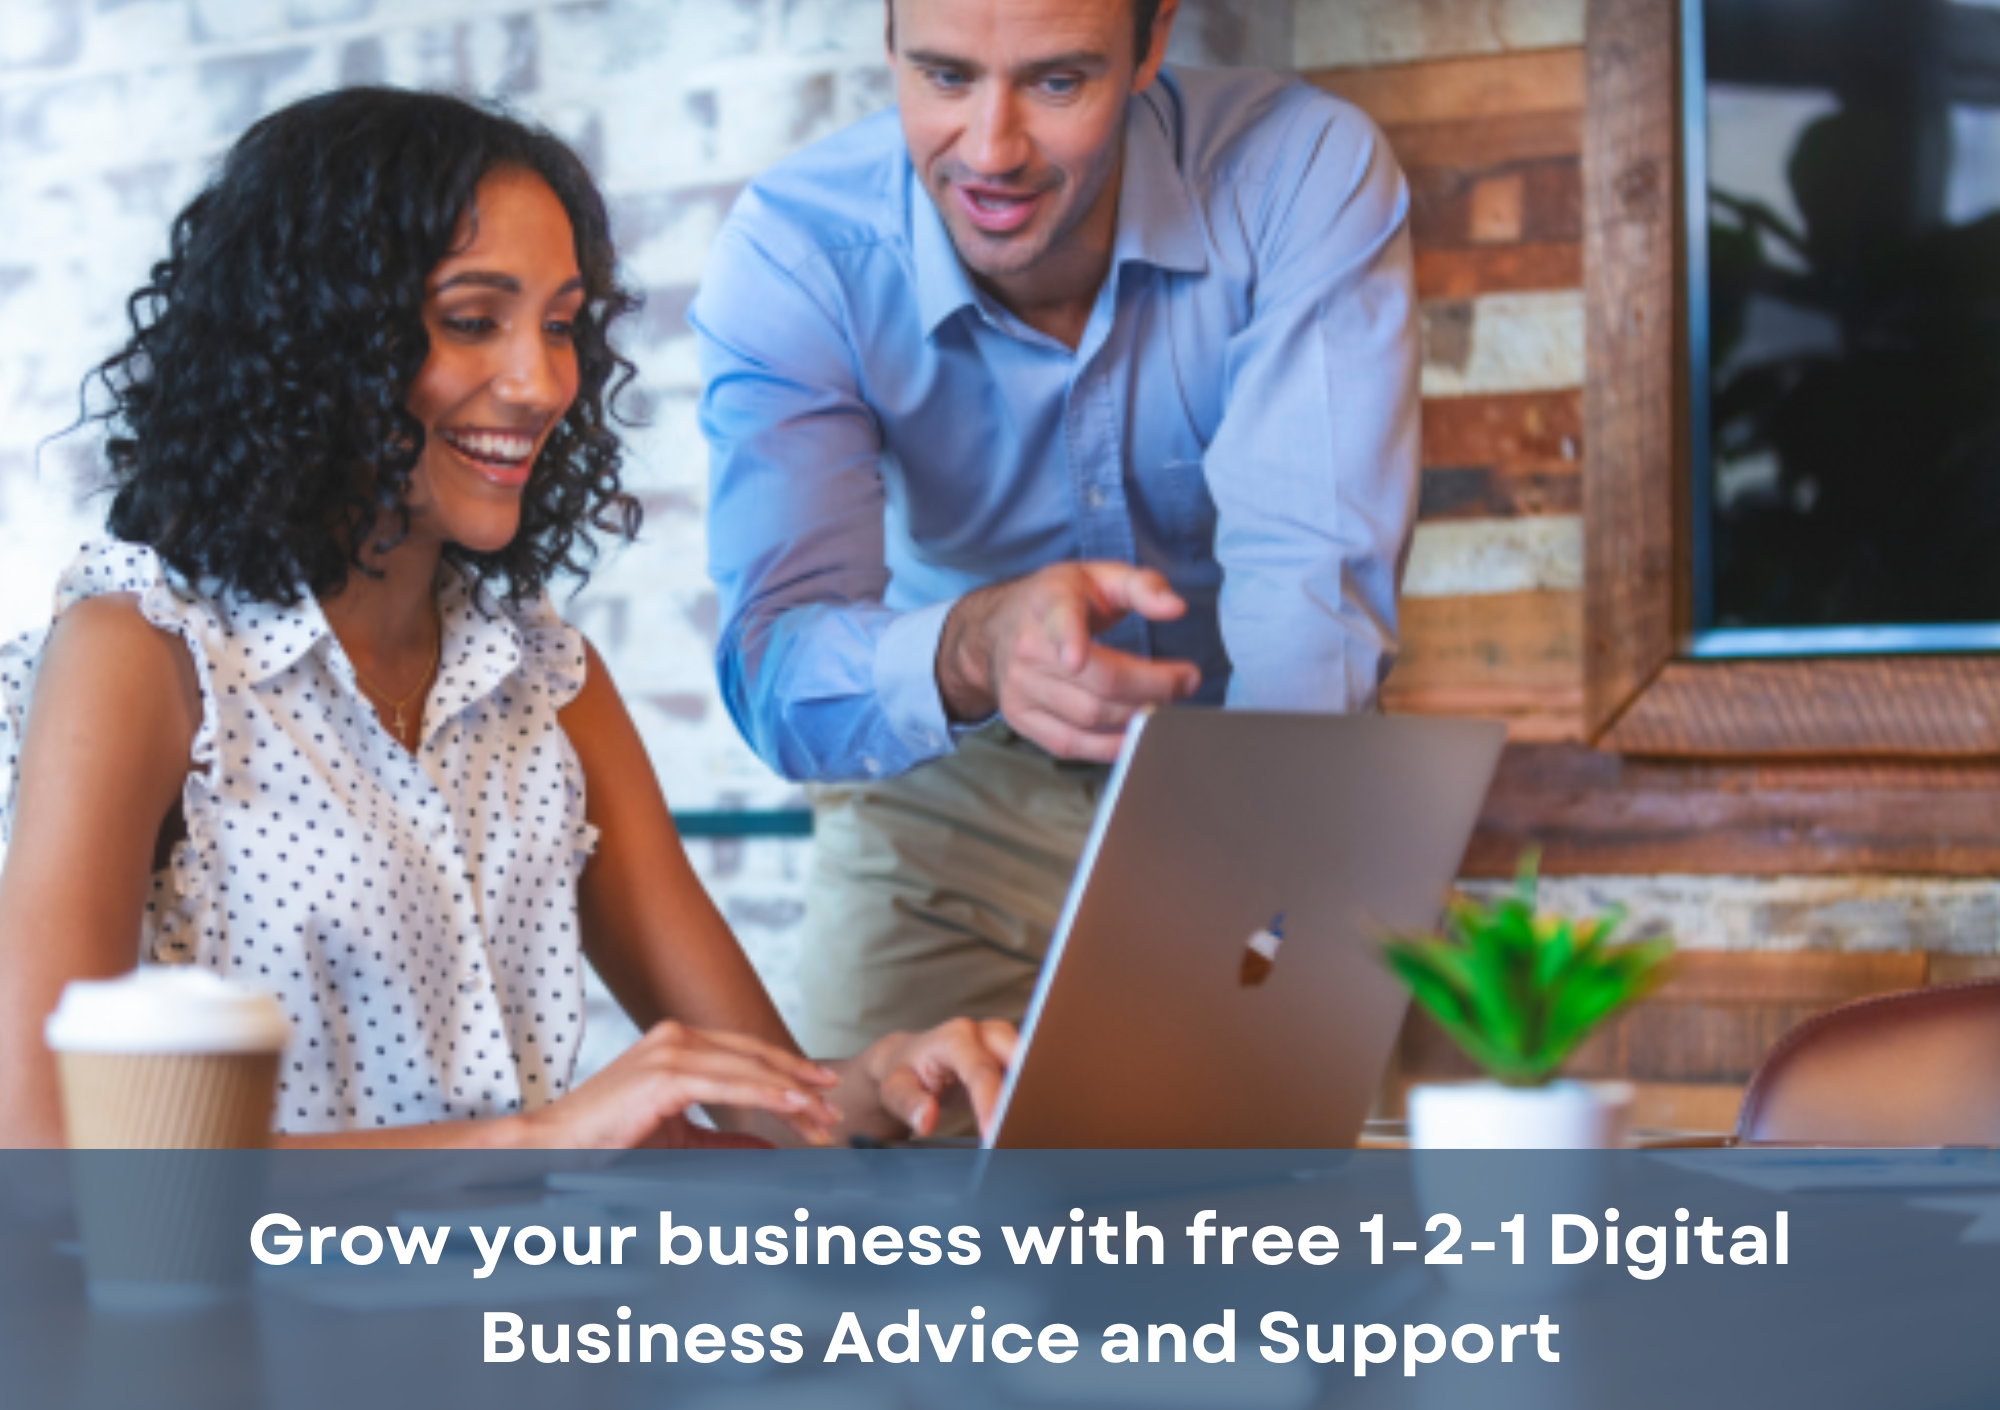 Digital Link - Digital Business Support